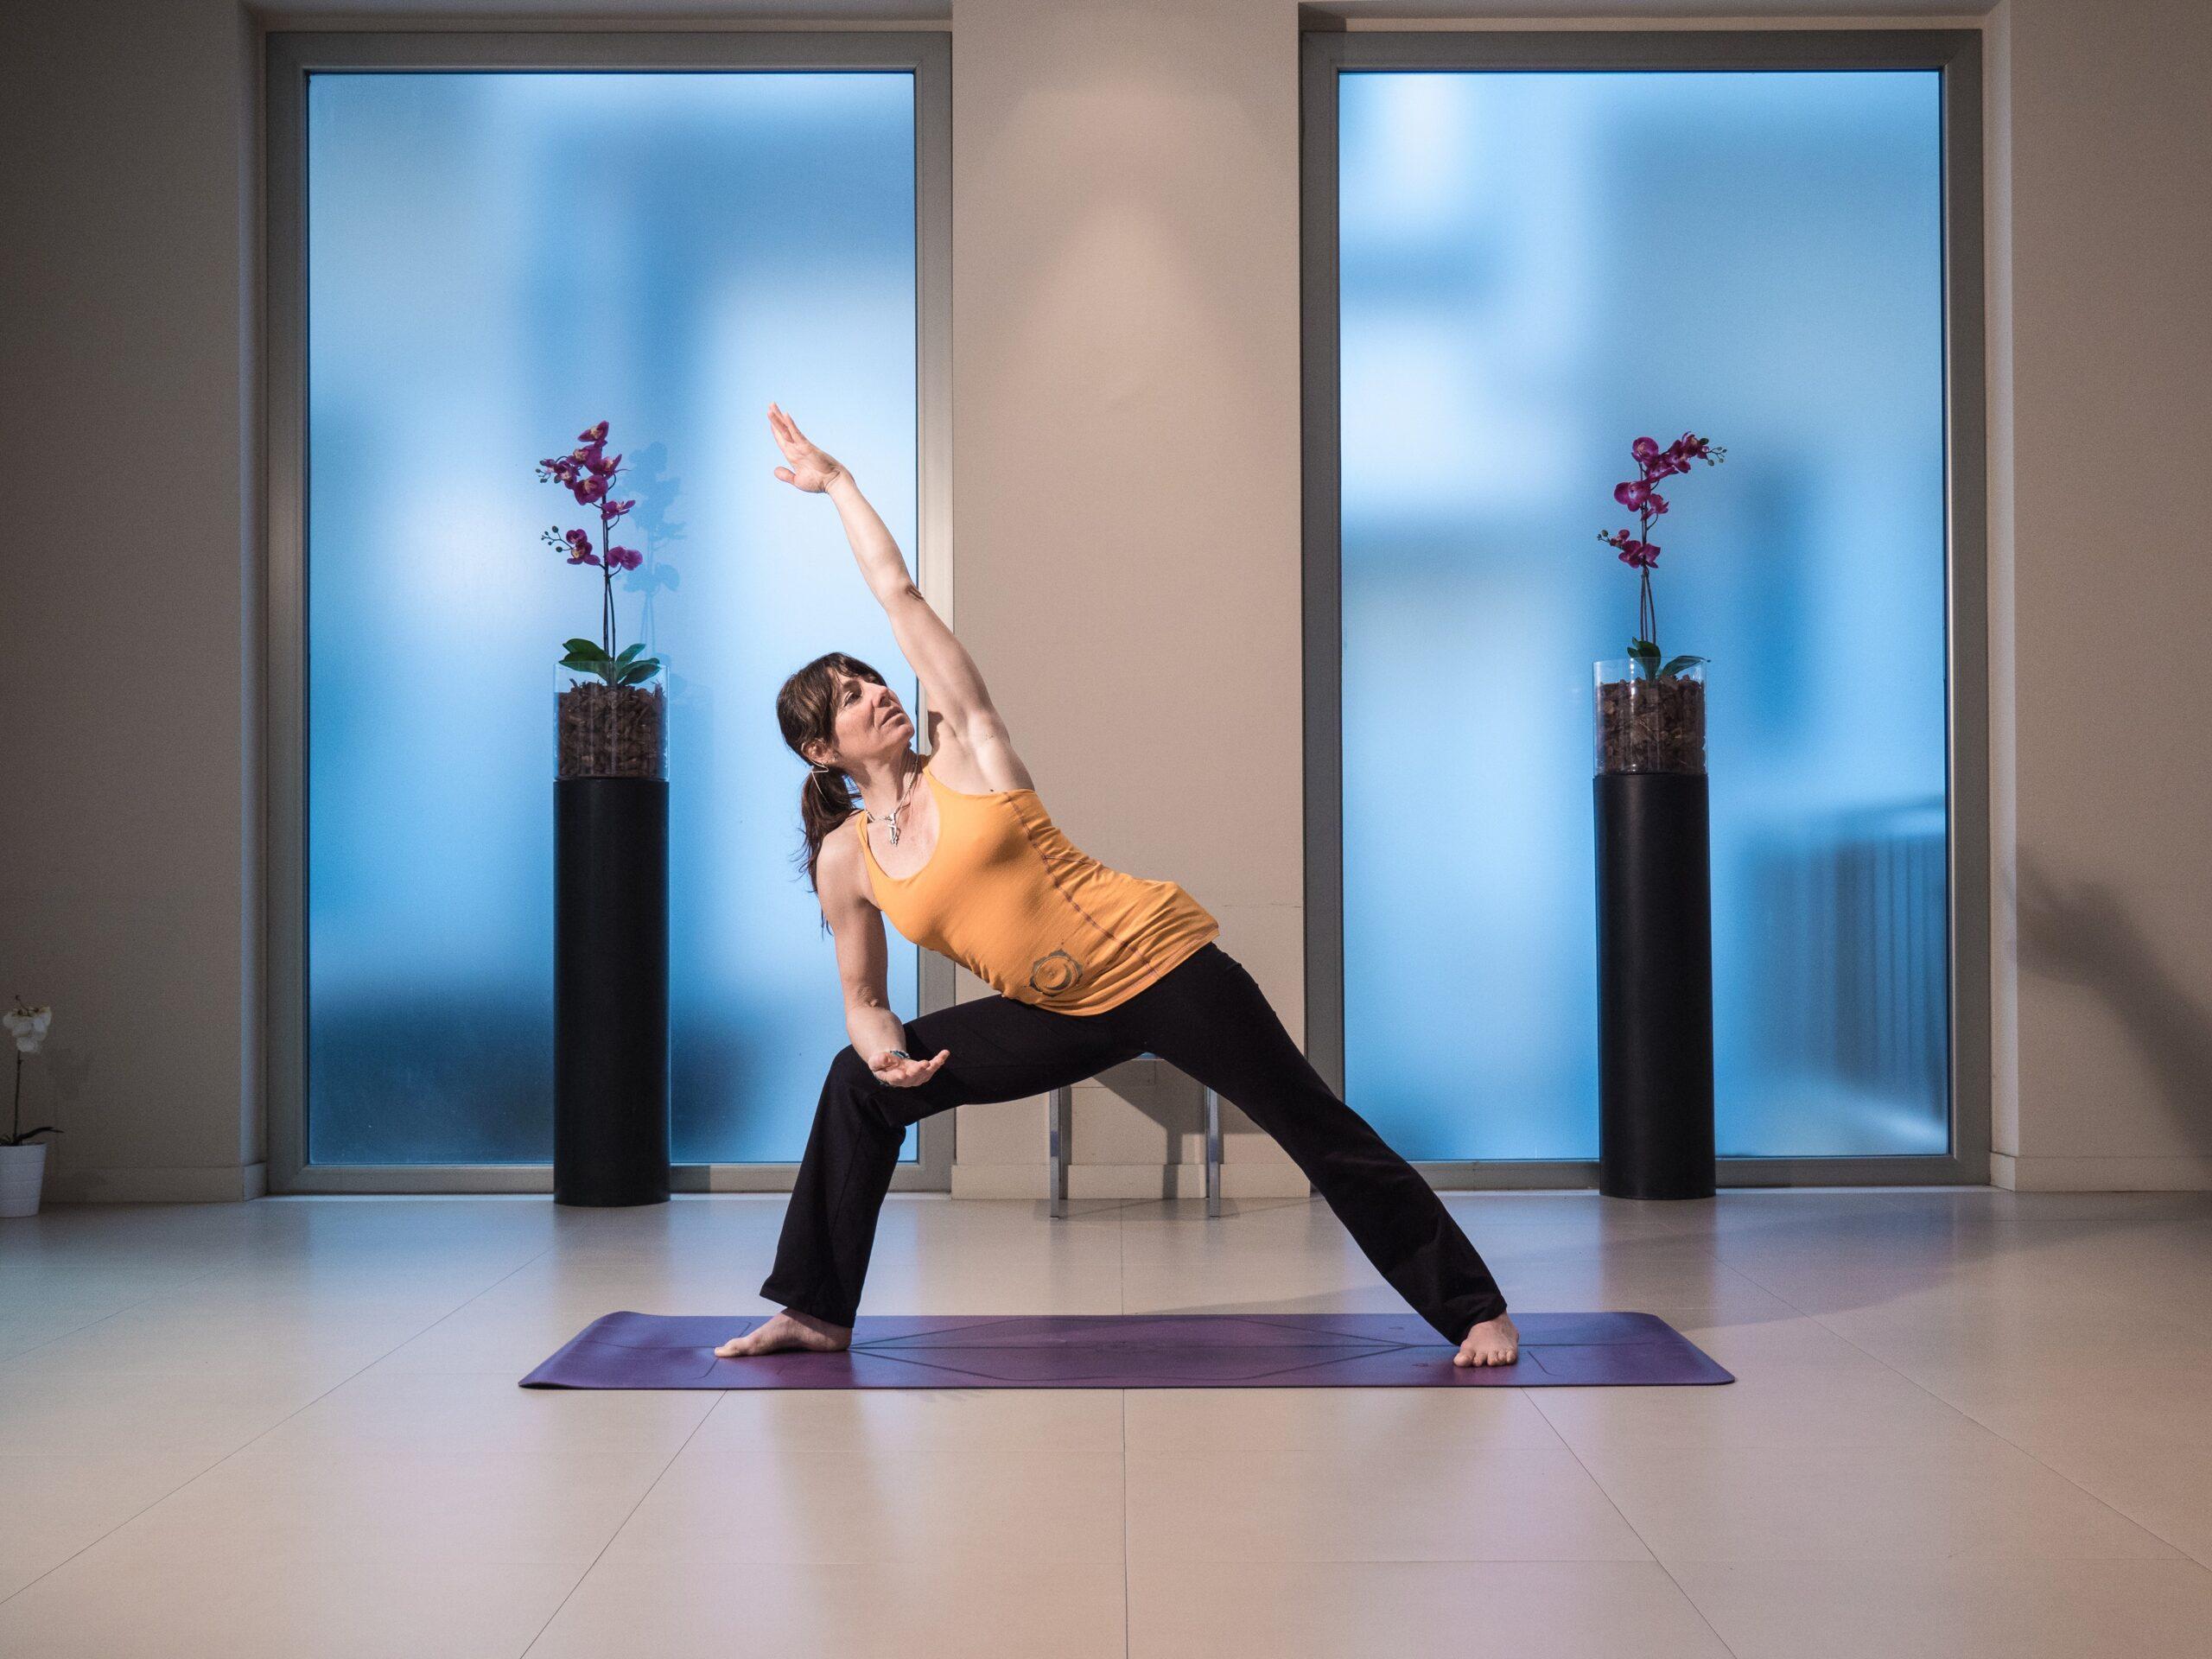 Squilibrio energetico, affrontalo con lo yoga